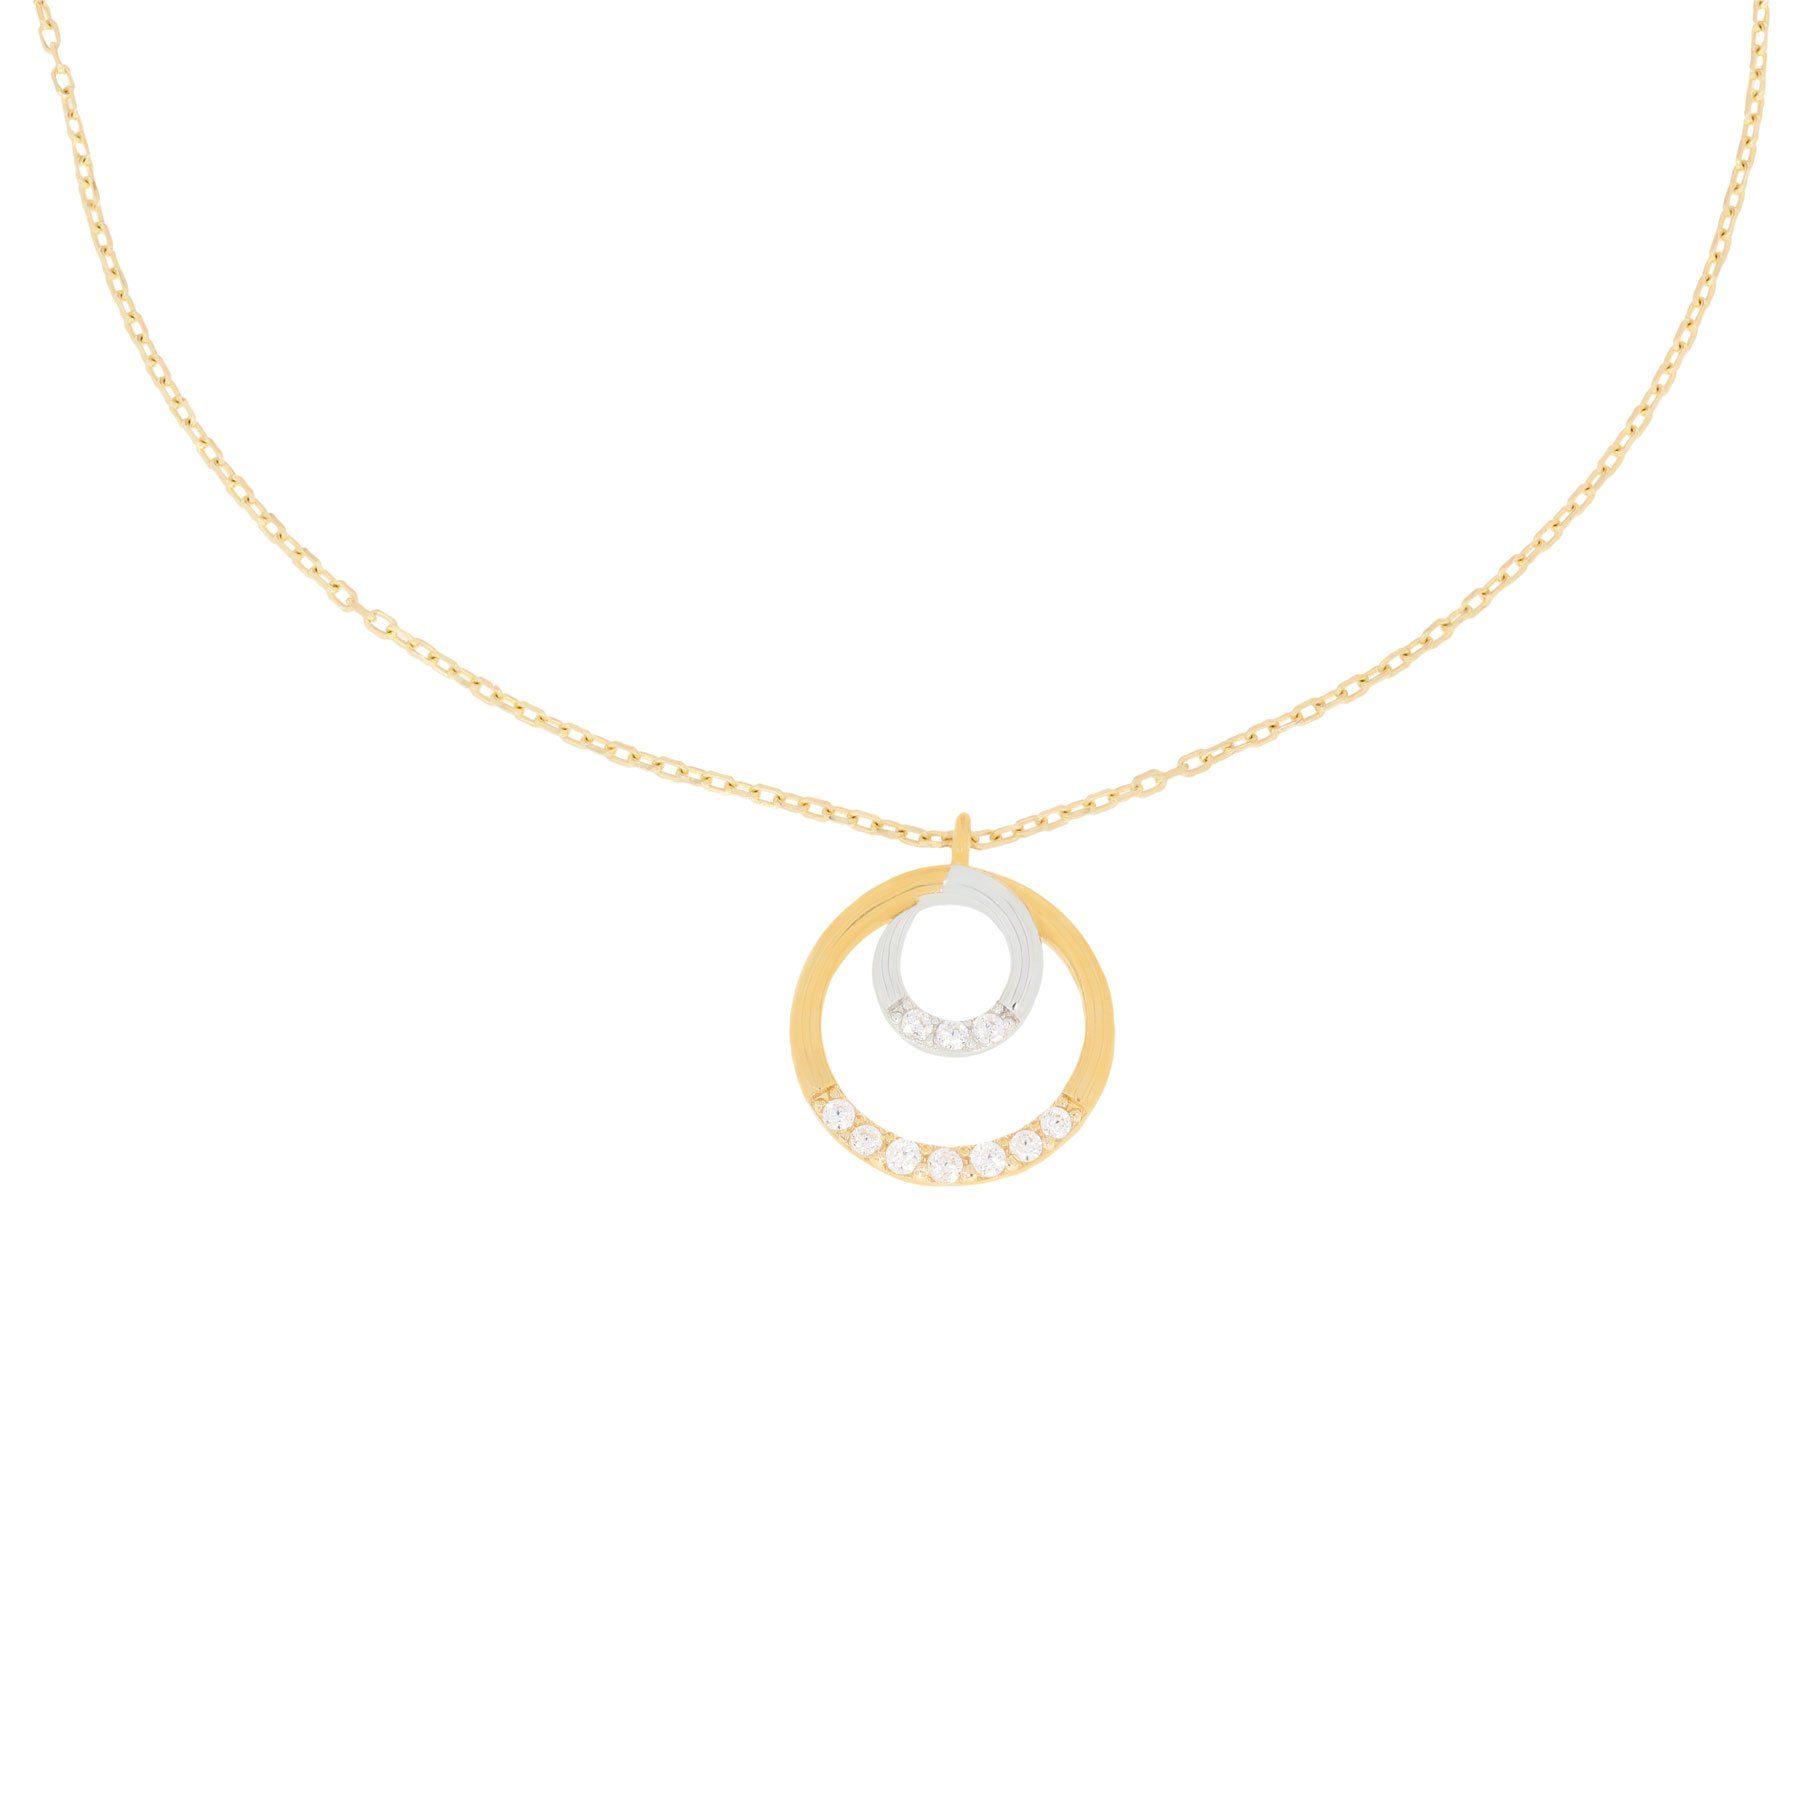 Stella-Jewellery Collier 585er Gold Collierkette mit Kreisanhänger Zirkonia (inkl. Etui), Collierkette mit Zirkonia